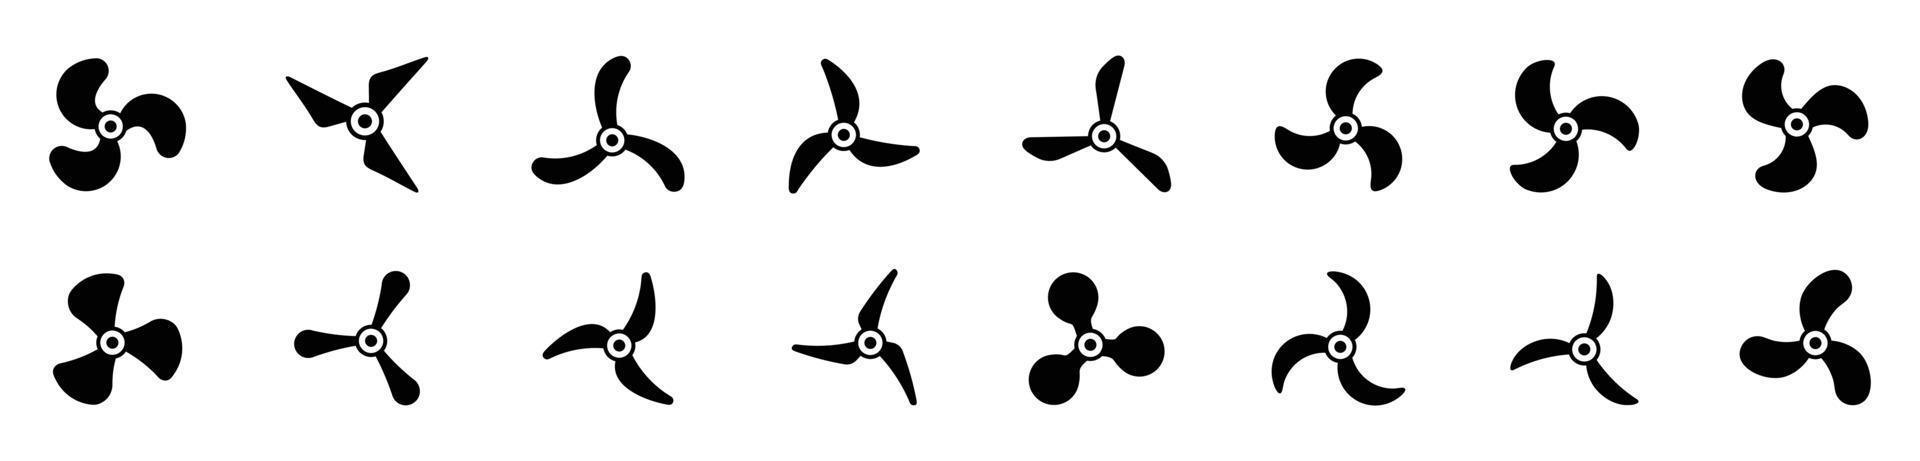 ícones de hélice de aeronaves, ilustração vetorial giratória de ventilador de símbolos. conjunto de ícones de hélice vetor